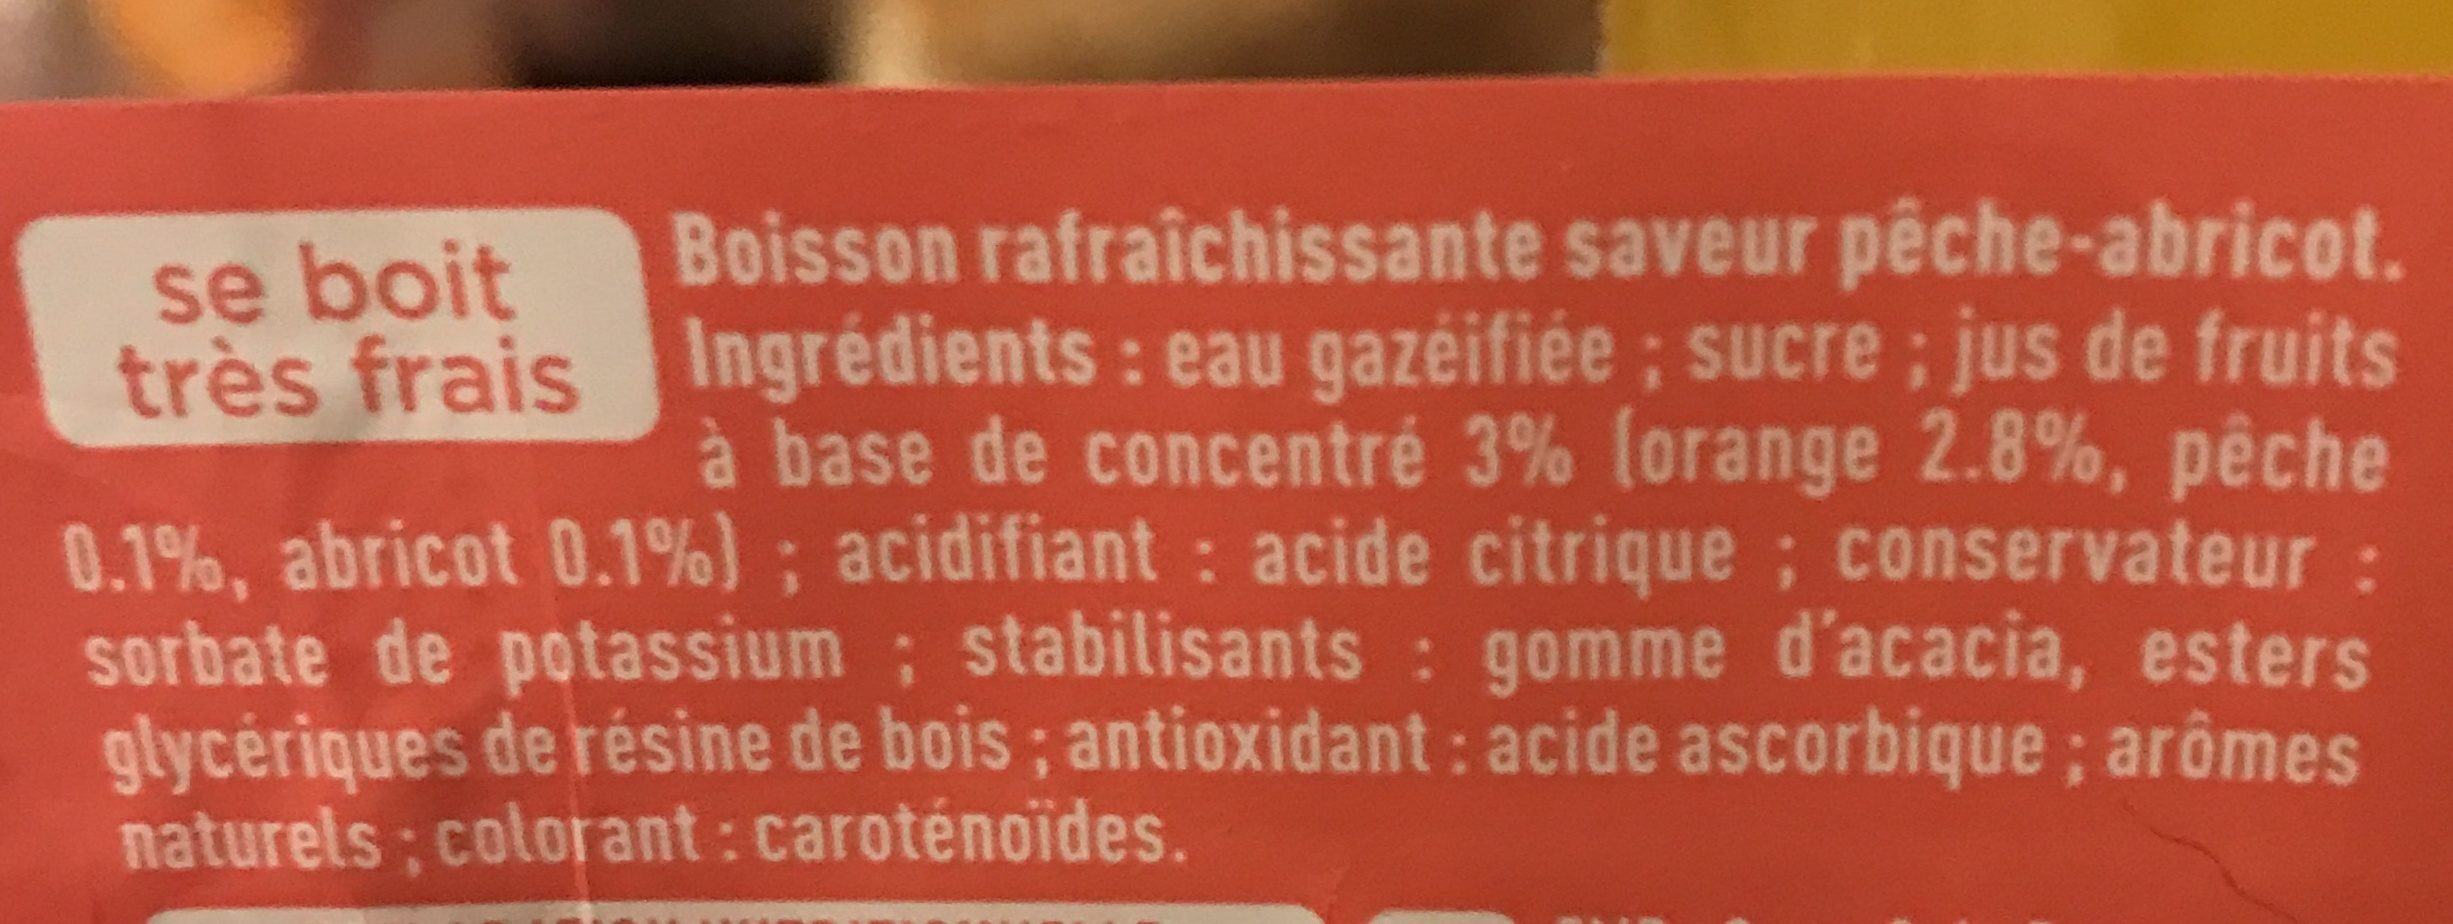 Fanta Peche Abricot btlle 1.5L pet - Ingredienser - fr